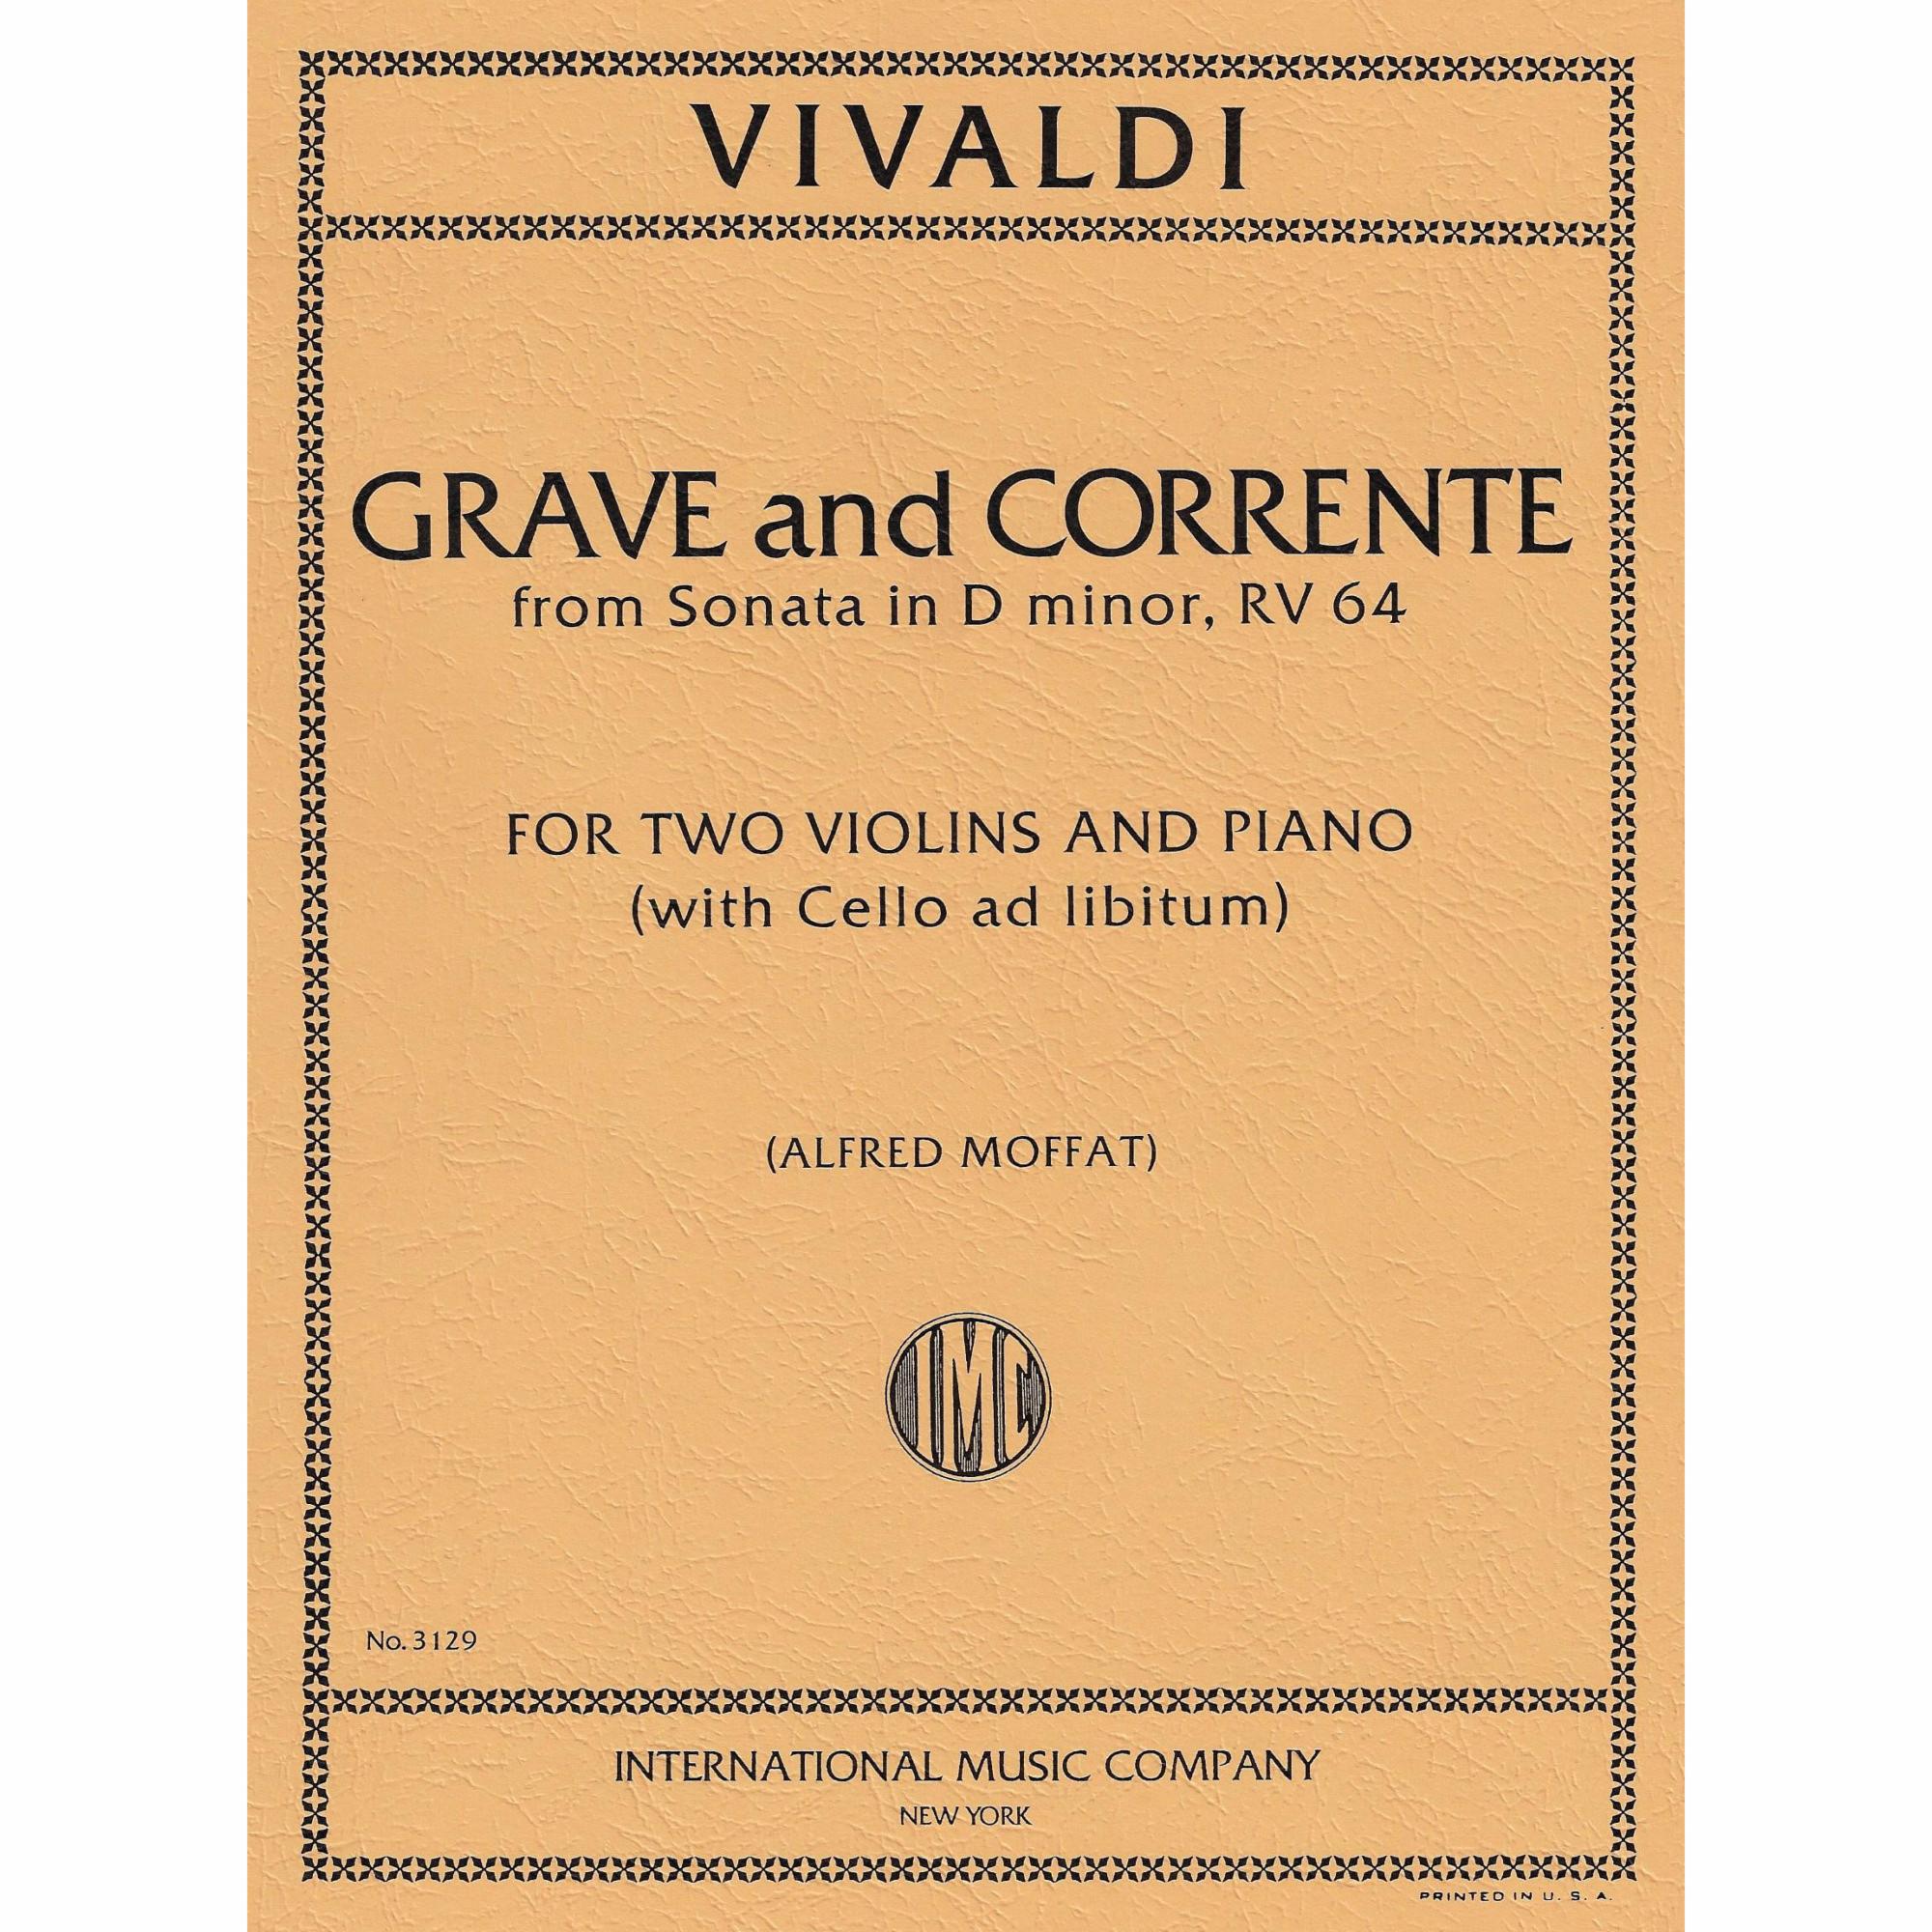 Vivaldi -- Grave and Corrente, from Sonata in D Minor, RV 64